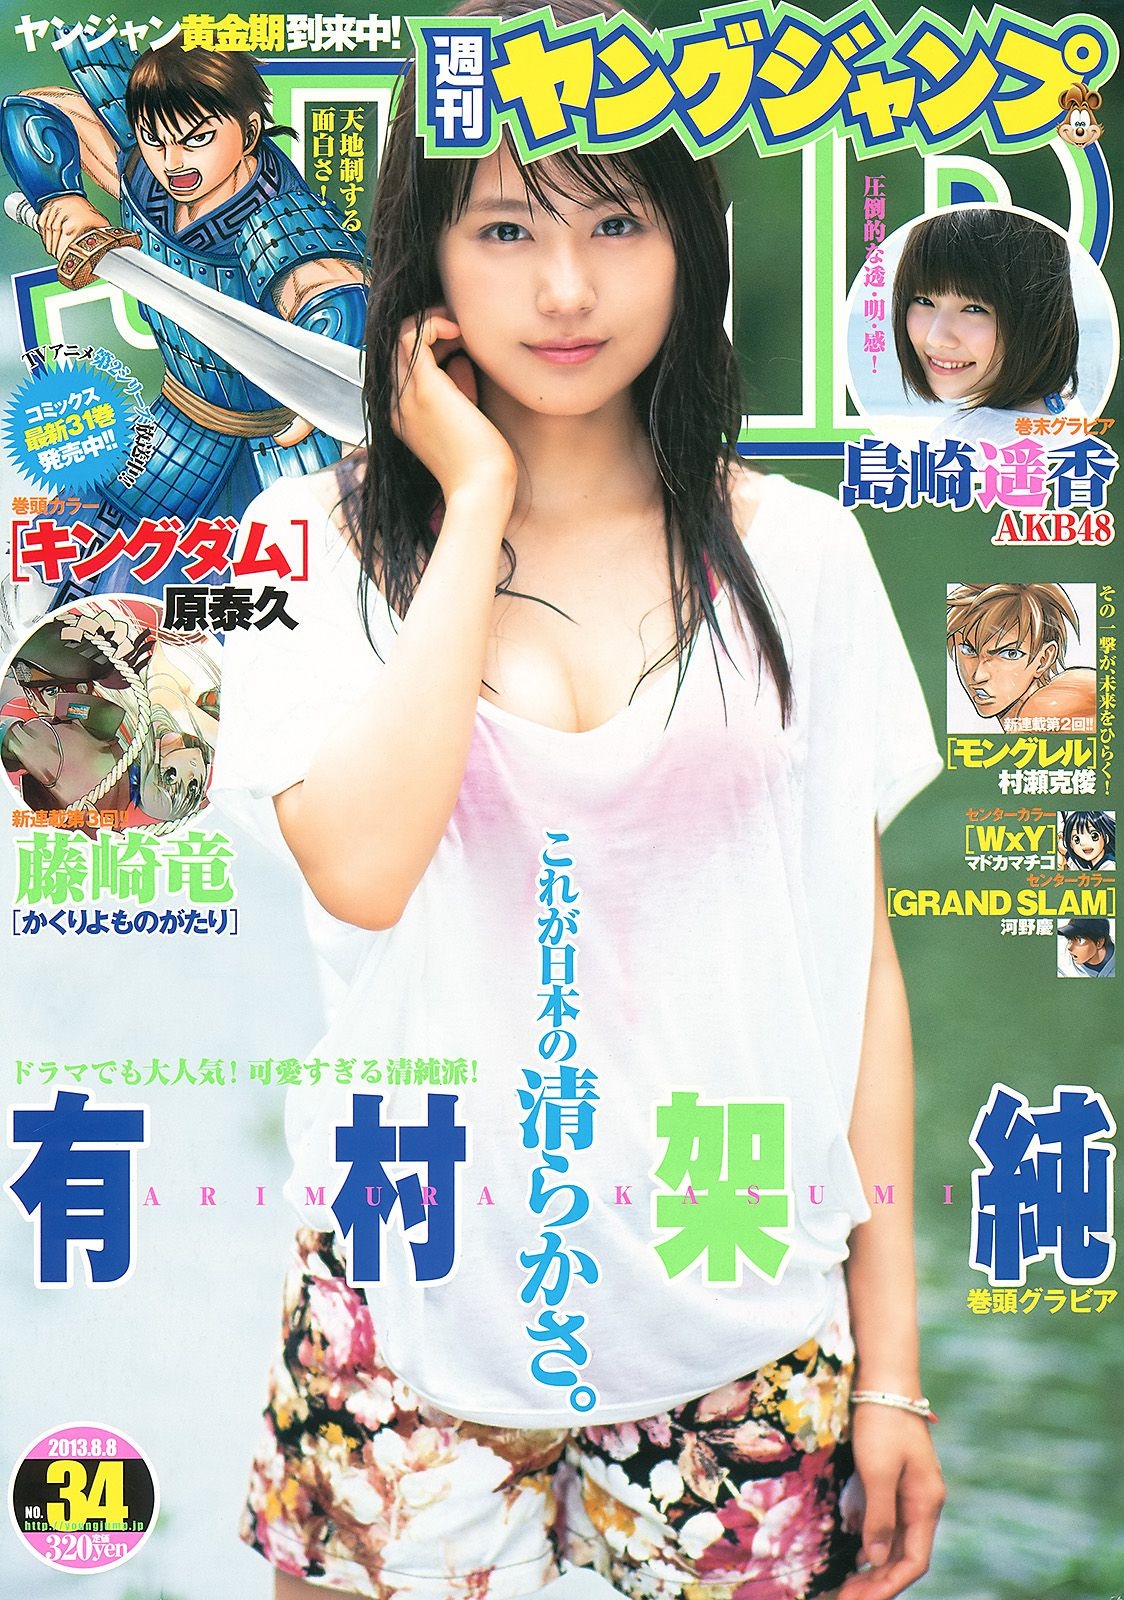 有村架純 島崎遙香 [Weekly Young Jump] 2013年No.34 写真杂志  第-1张